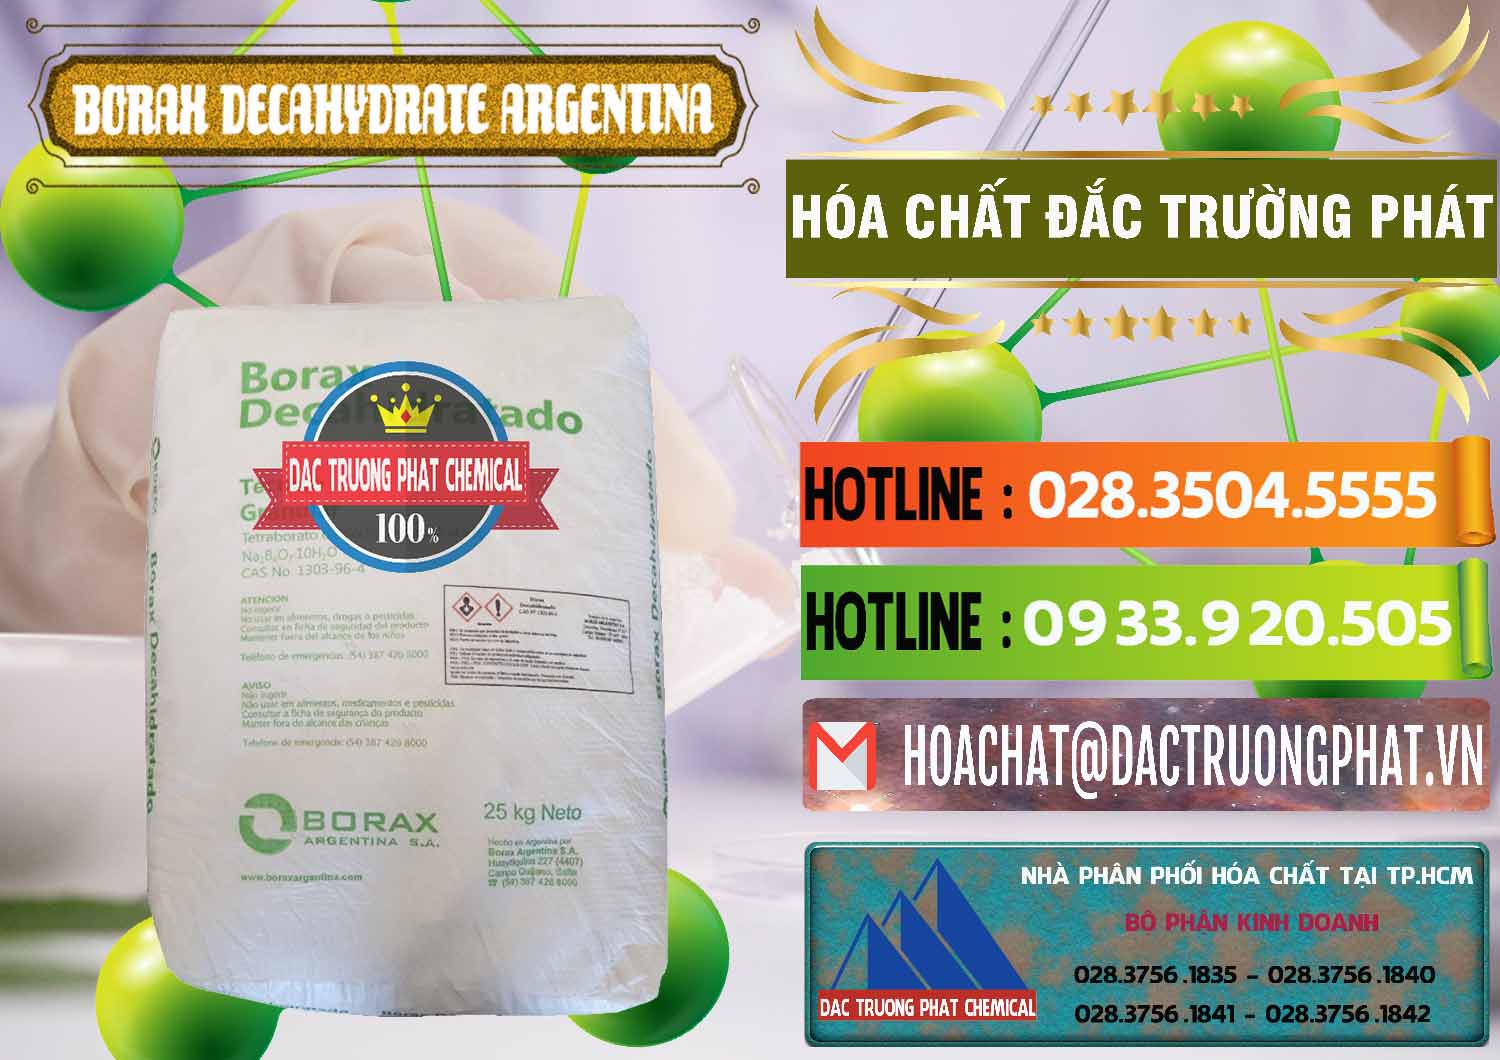 Nơi chuyên phân phối & bán Borax Decahydrate Argentina - 0446 - Chuyên phân phối & bán hóa chất tại TP.HCM - cungcaphoachat.com.vn